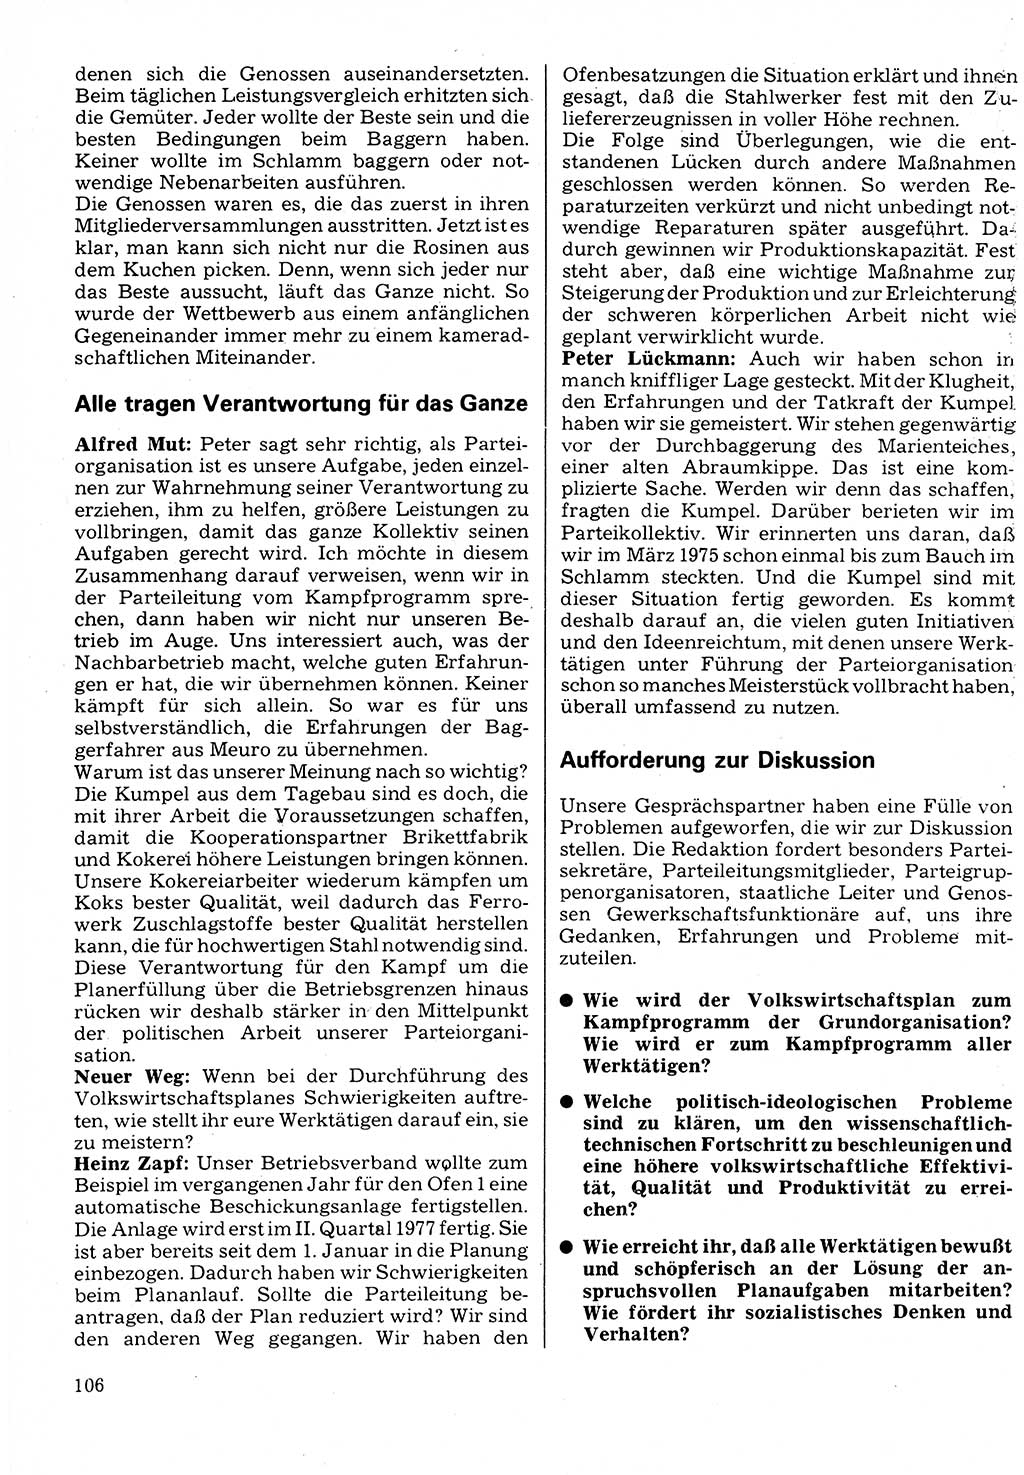 Neuer Weg (NW), Organ des Zentralkomitees (ZK) der SED (Sozialistische Einheitspartei Deutschlands) für Fragen des Parteilebens, 32. Jahrgang [Deutsche Demokratische Republik (DDR)] 1977, Seite 106 (NW ZK SED DDR 1977, S. 106)